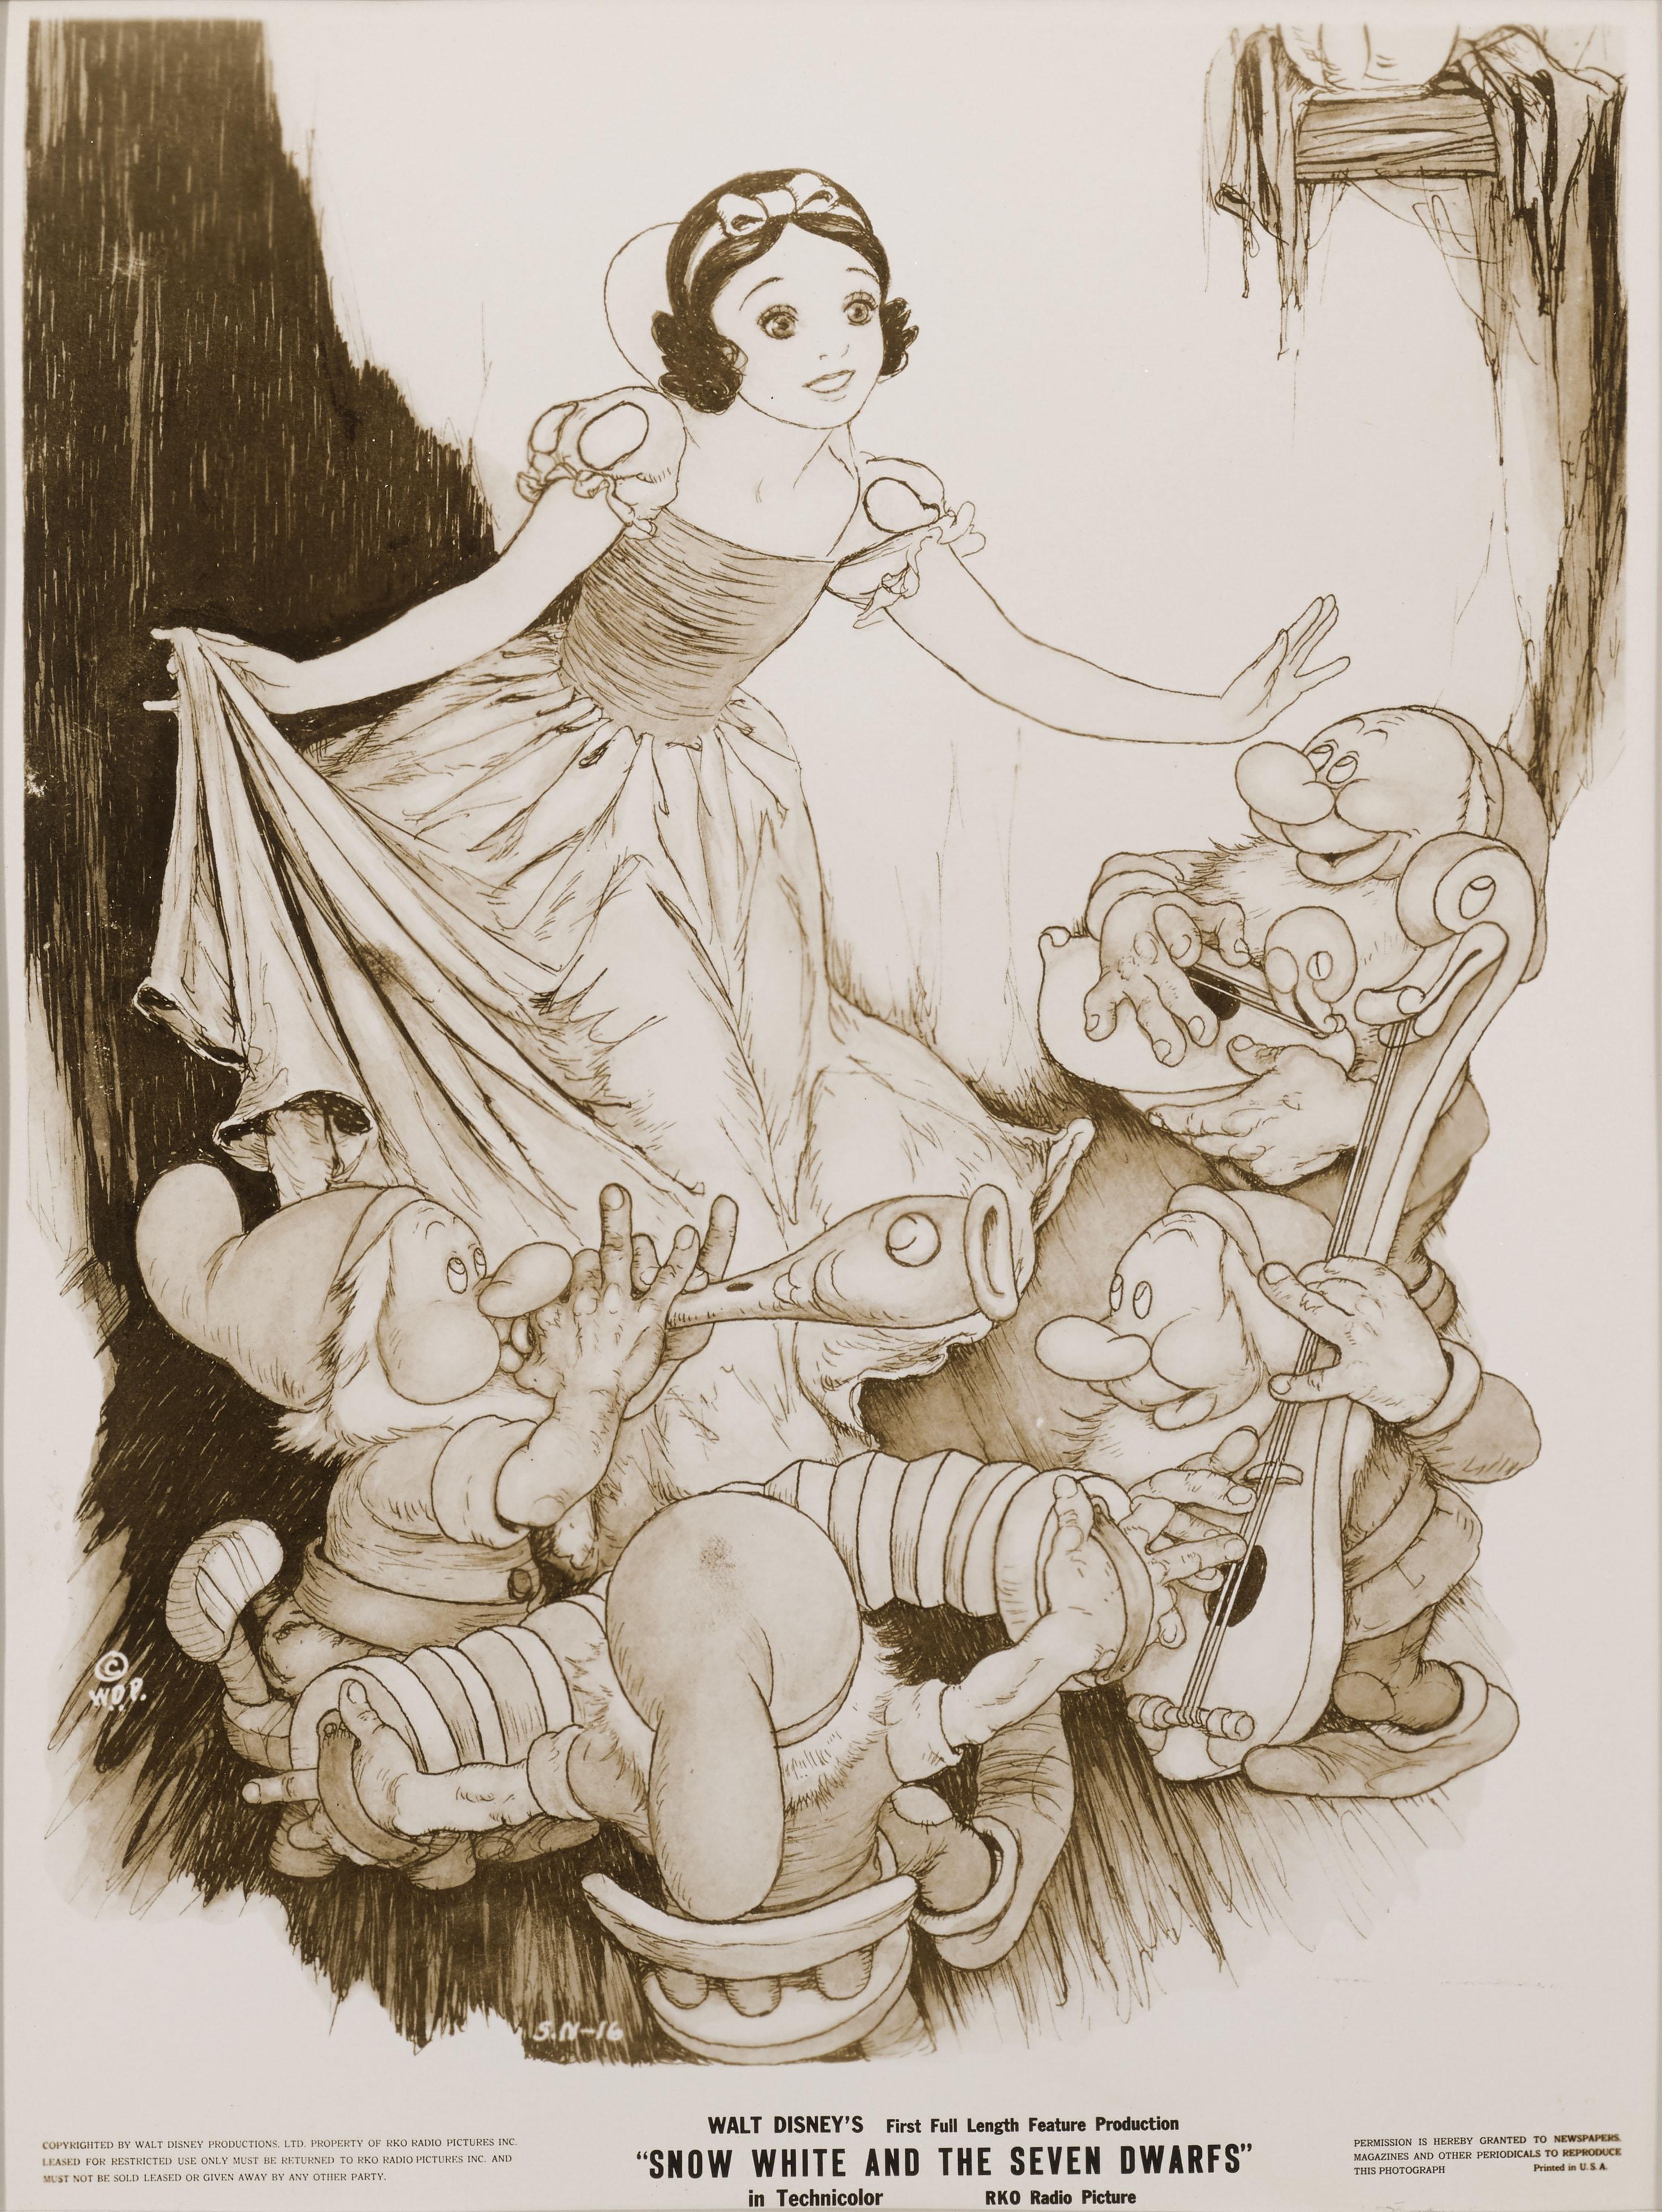 Original-Fotostandbild der Produktion von Schneewittchen und die sieben Zwerge 1937.
Dieses Stück zeigt Tenggren-Kunst.
Dieses Stück wäre für die Werbung verwendet und an Nachrichtenagenturen verschickt worden.
Dies war Walt Disneys erster